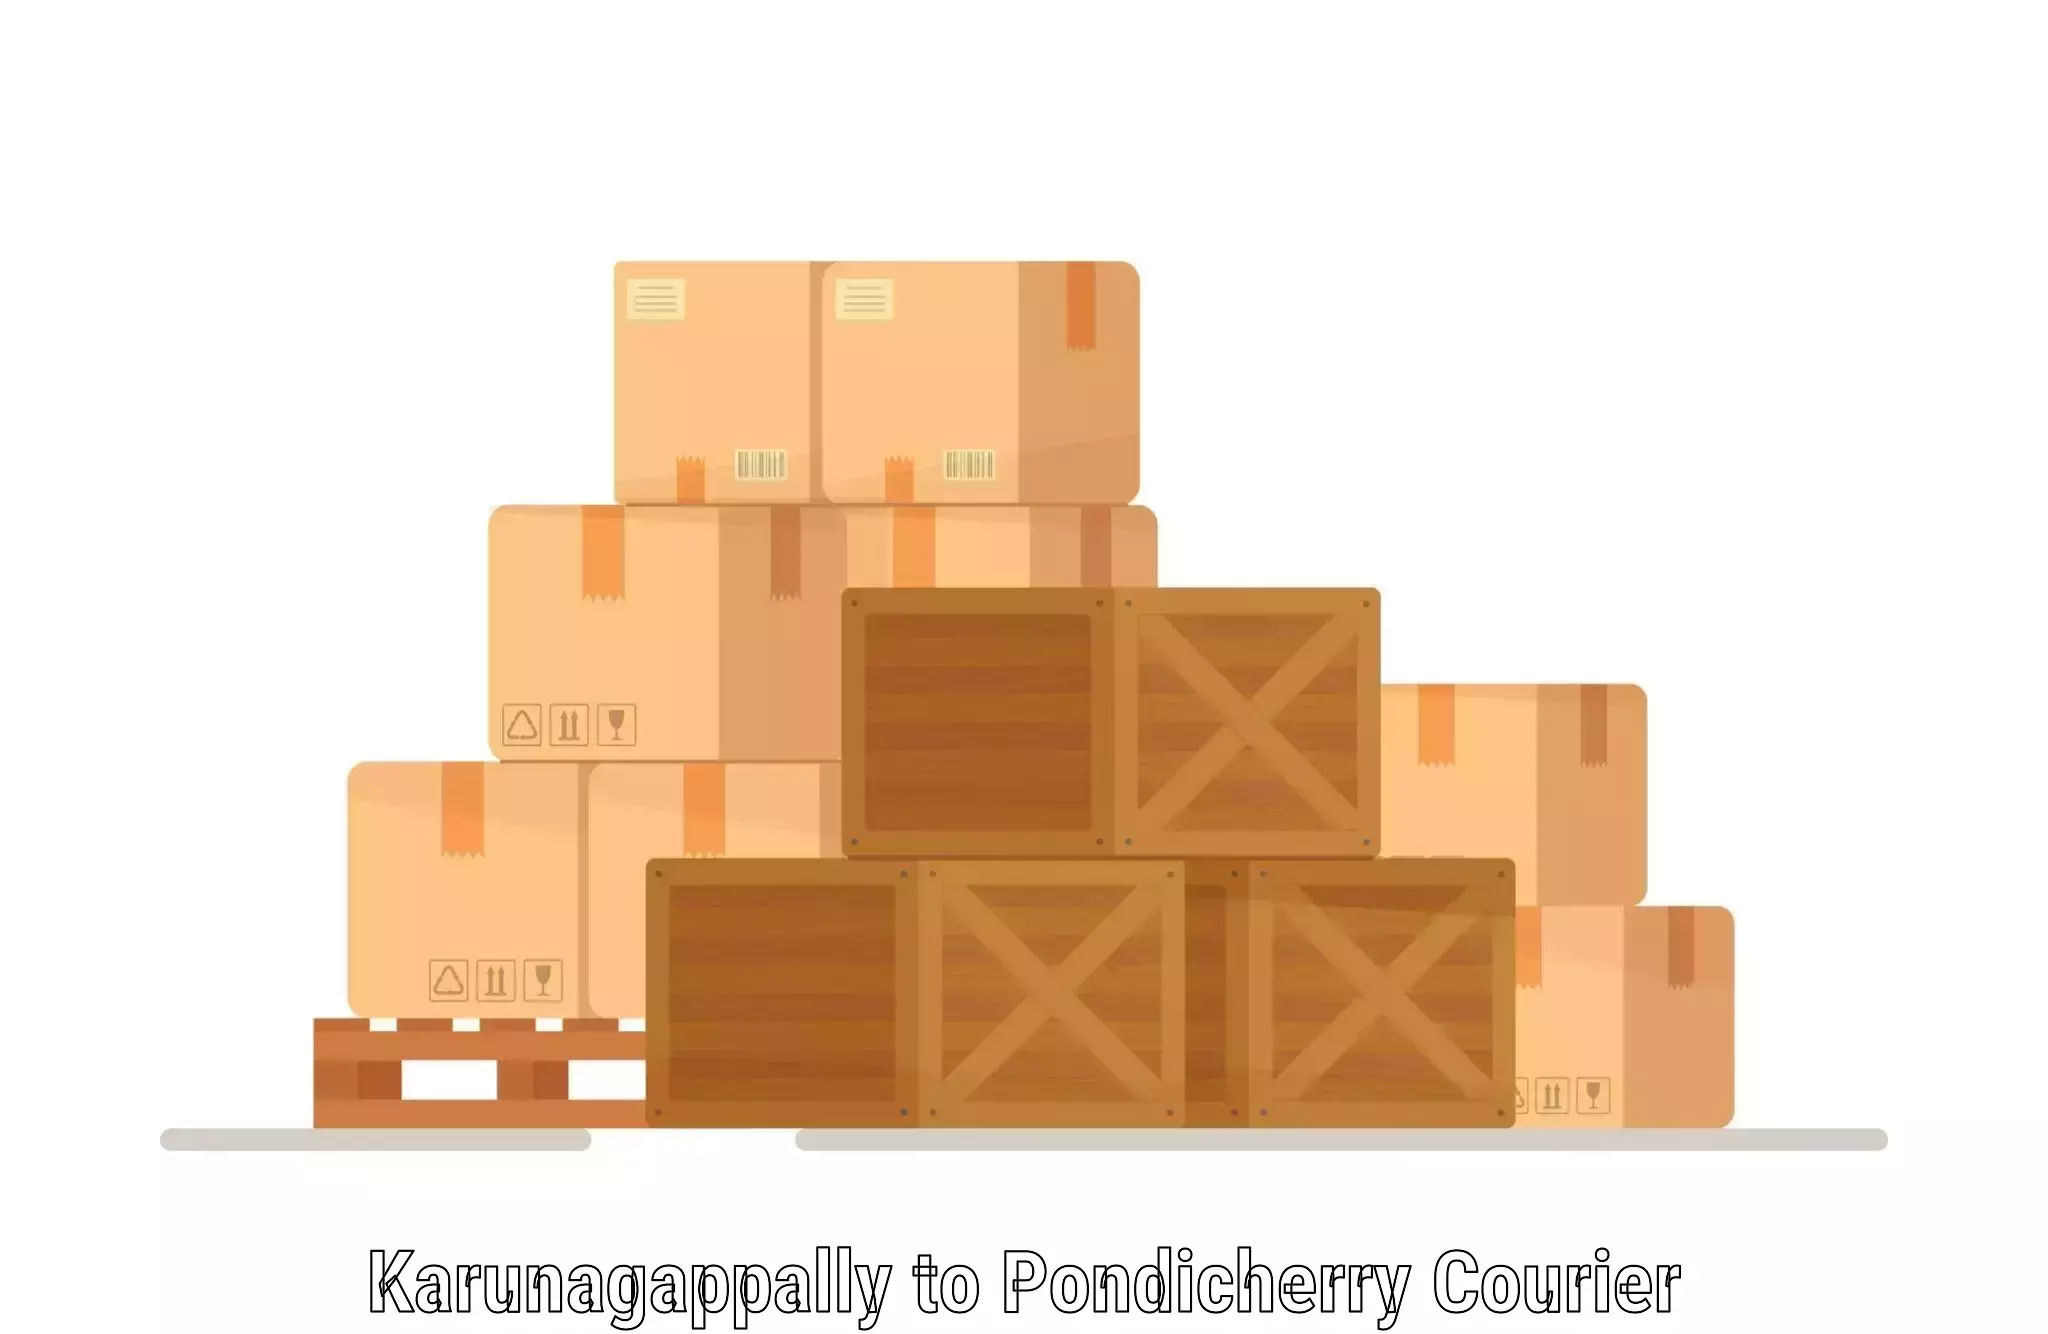 Courier app Karunagappally to Pondicherry